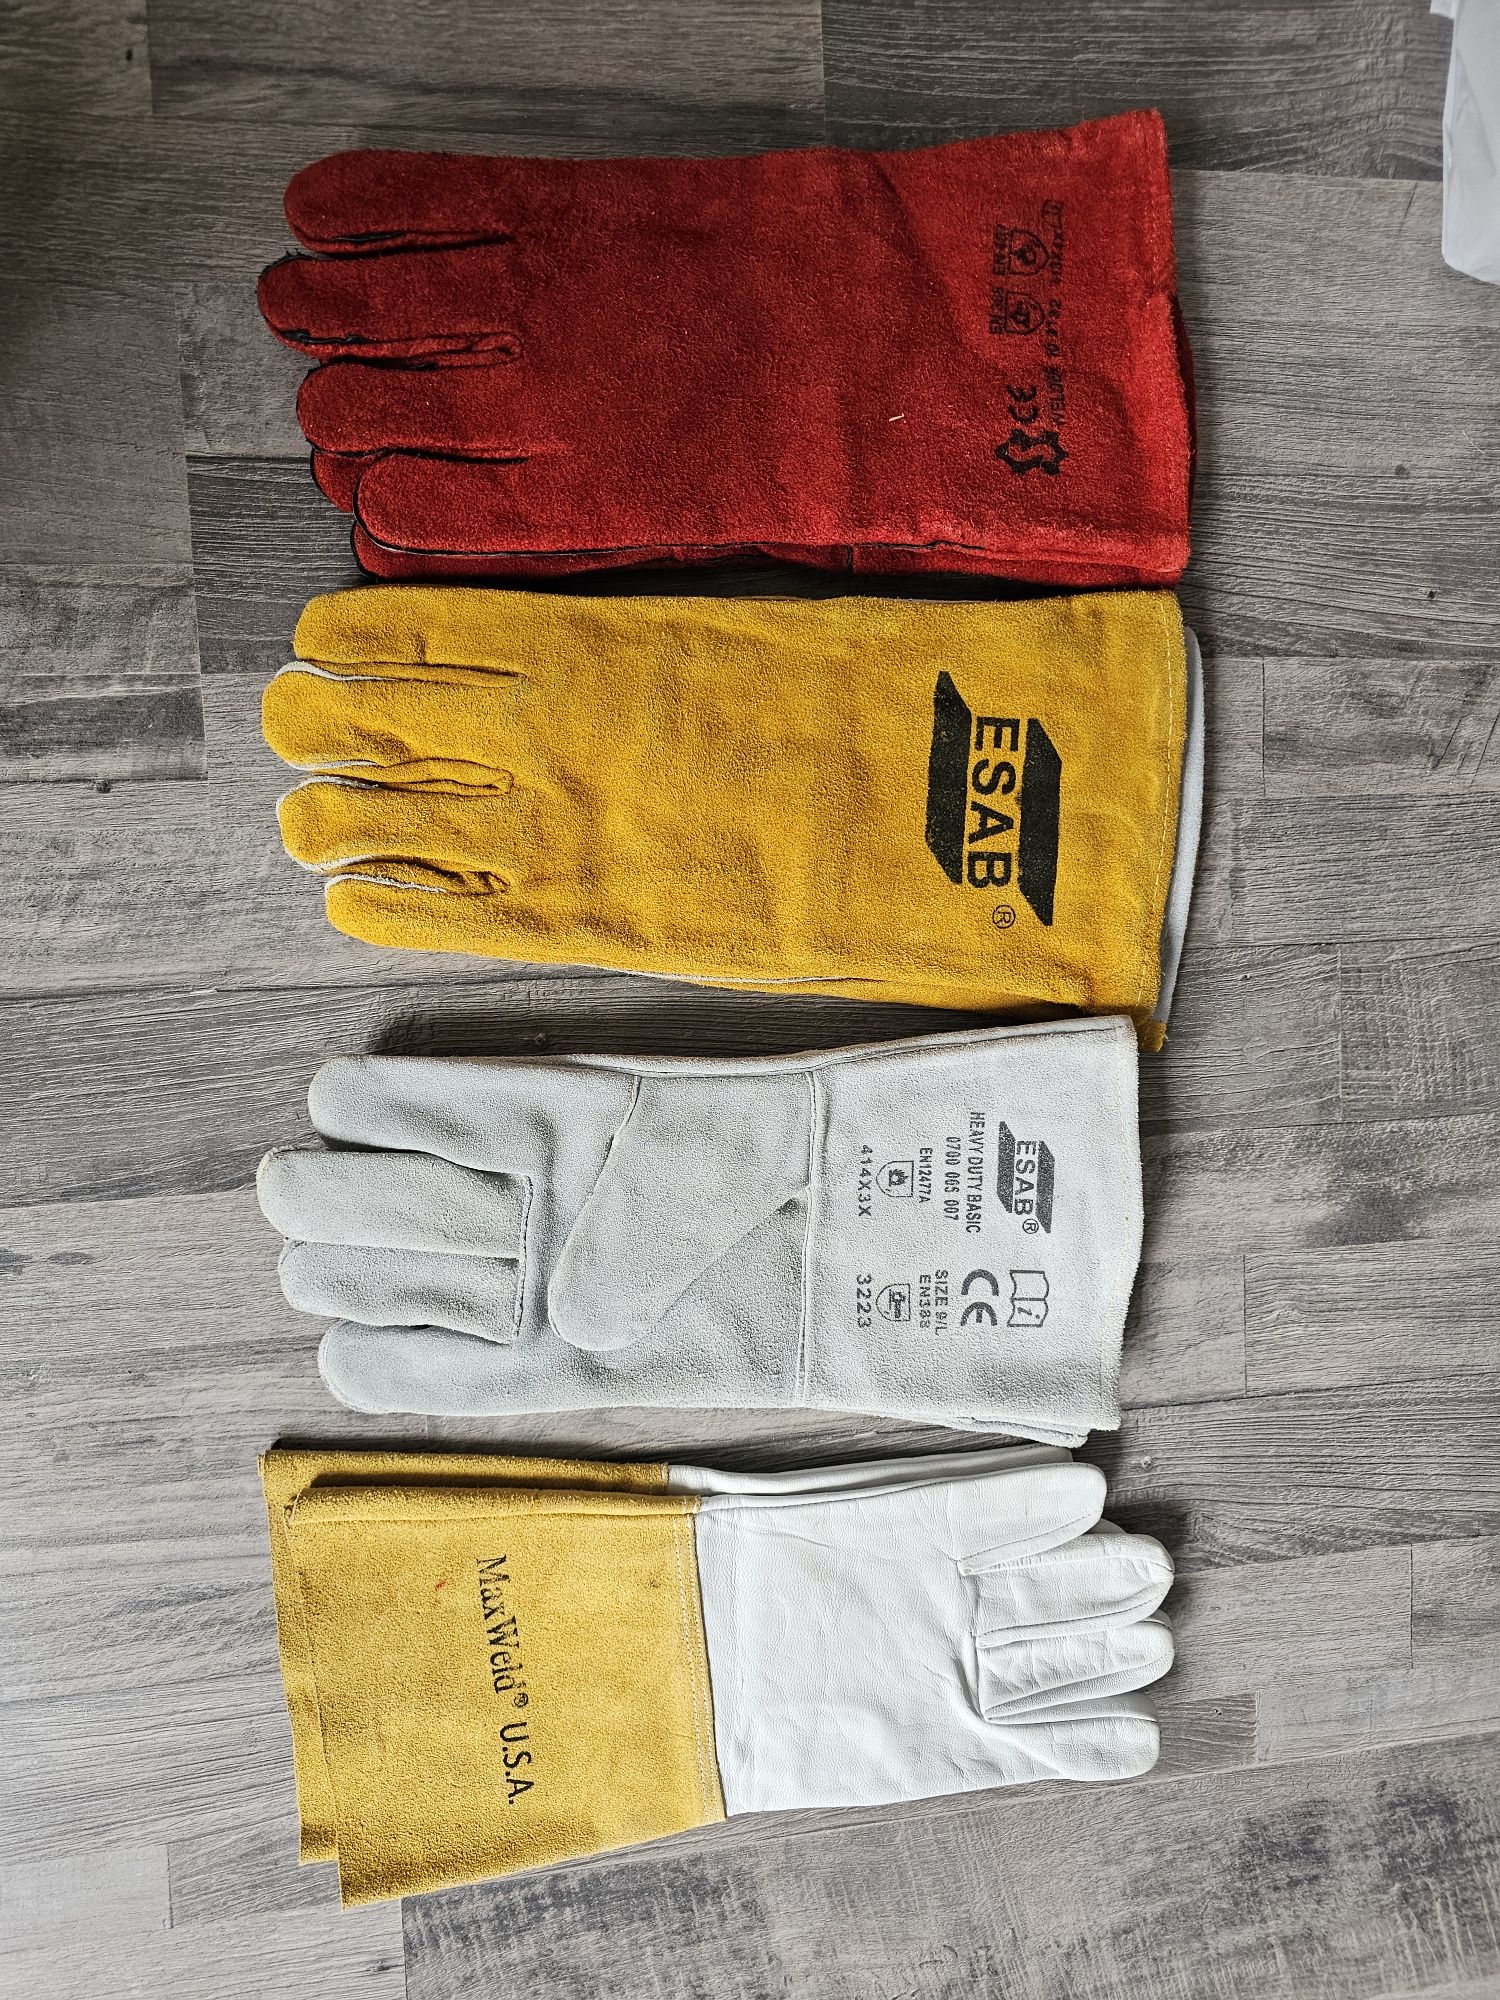 Продаются новые аргонные перчатки ESAB. Цена 1500  тенге за пару